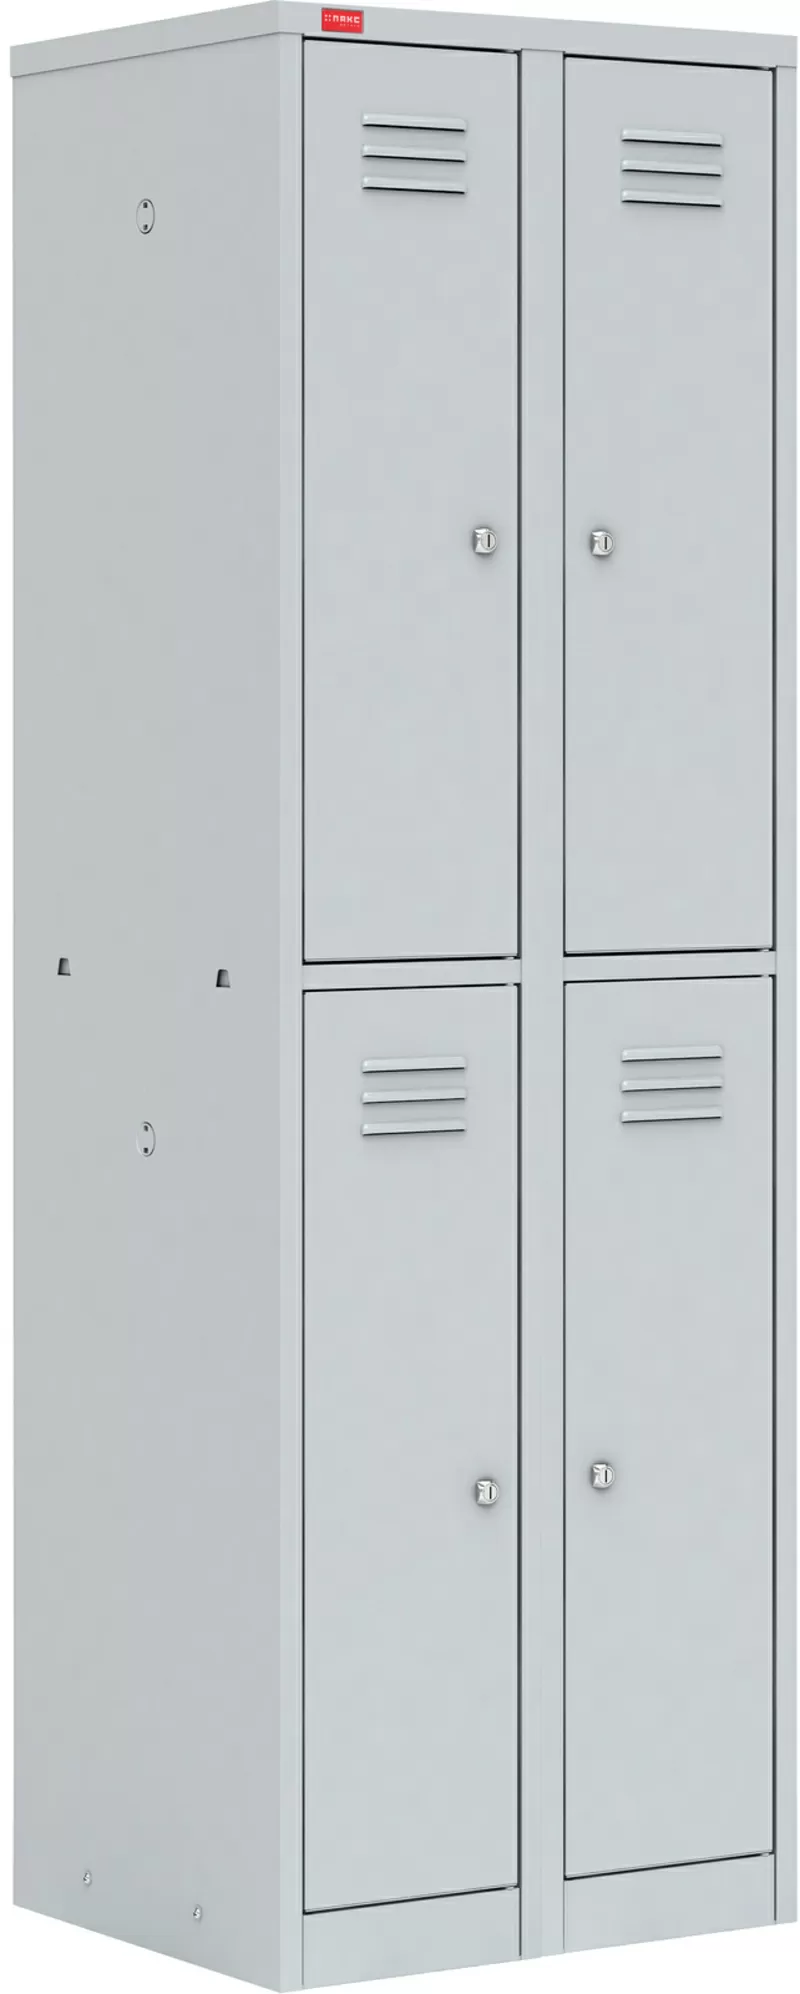 Металлический шкаф для одежды  ШРМ – 24 оптом и в розницу